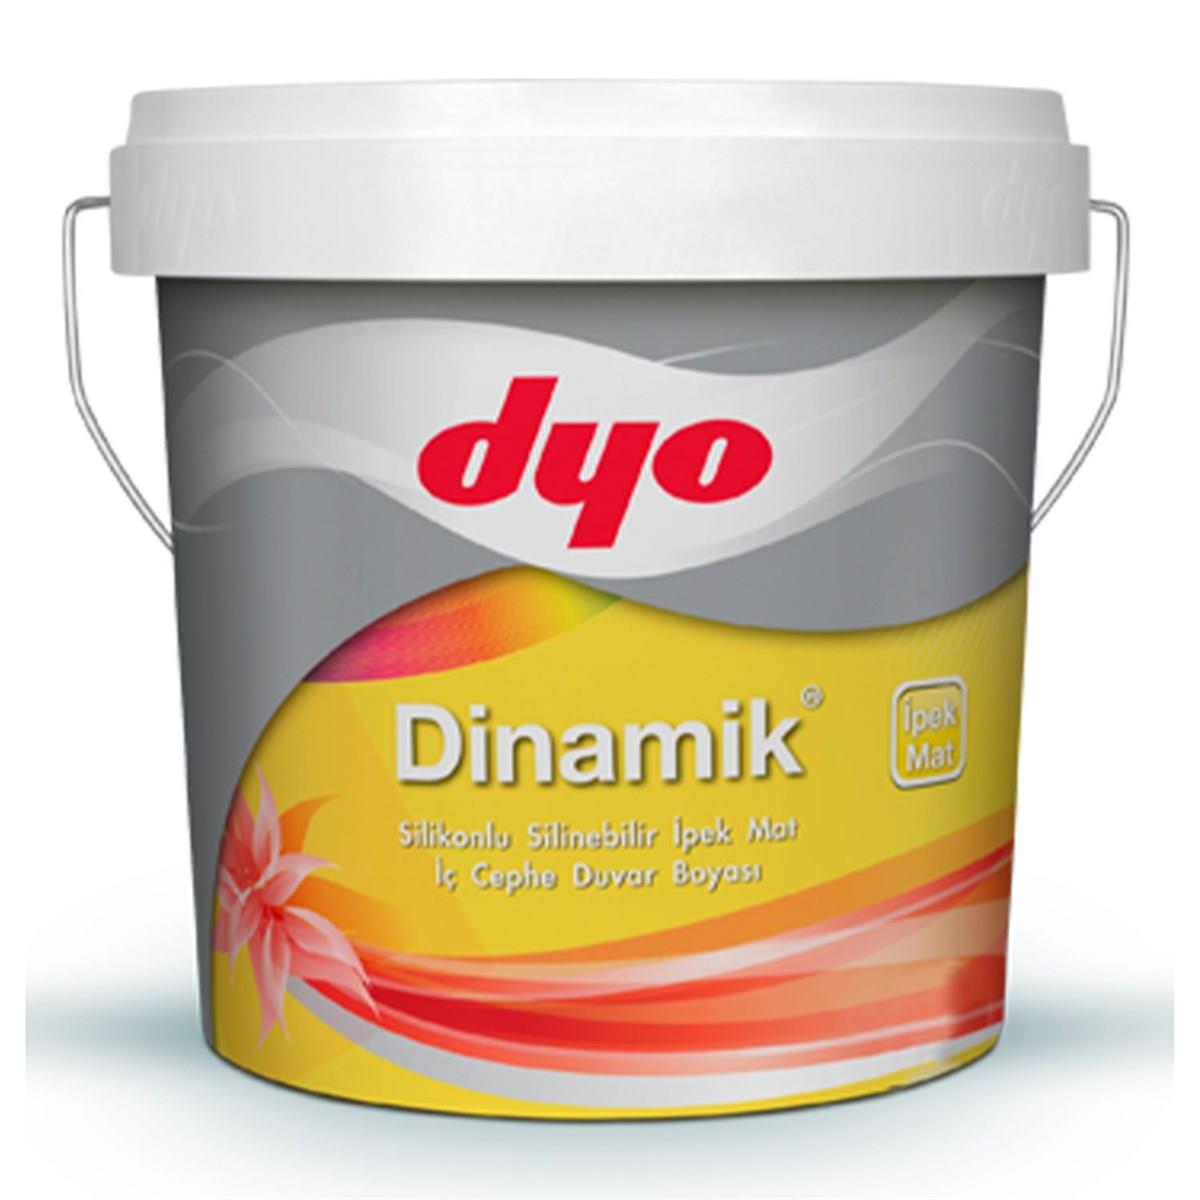 Dyo Dinamik İç Cephe Boyası Silikonlu 7550 Yeni Çağıl 2,5 Lt